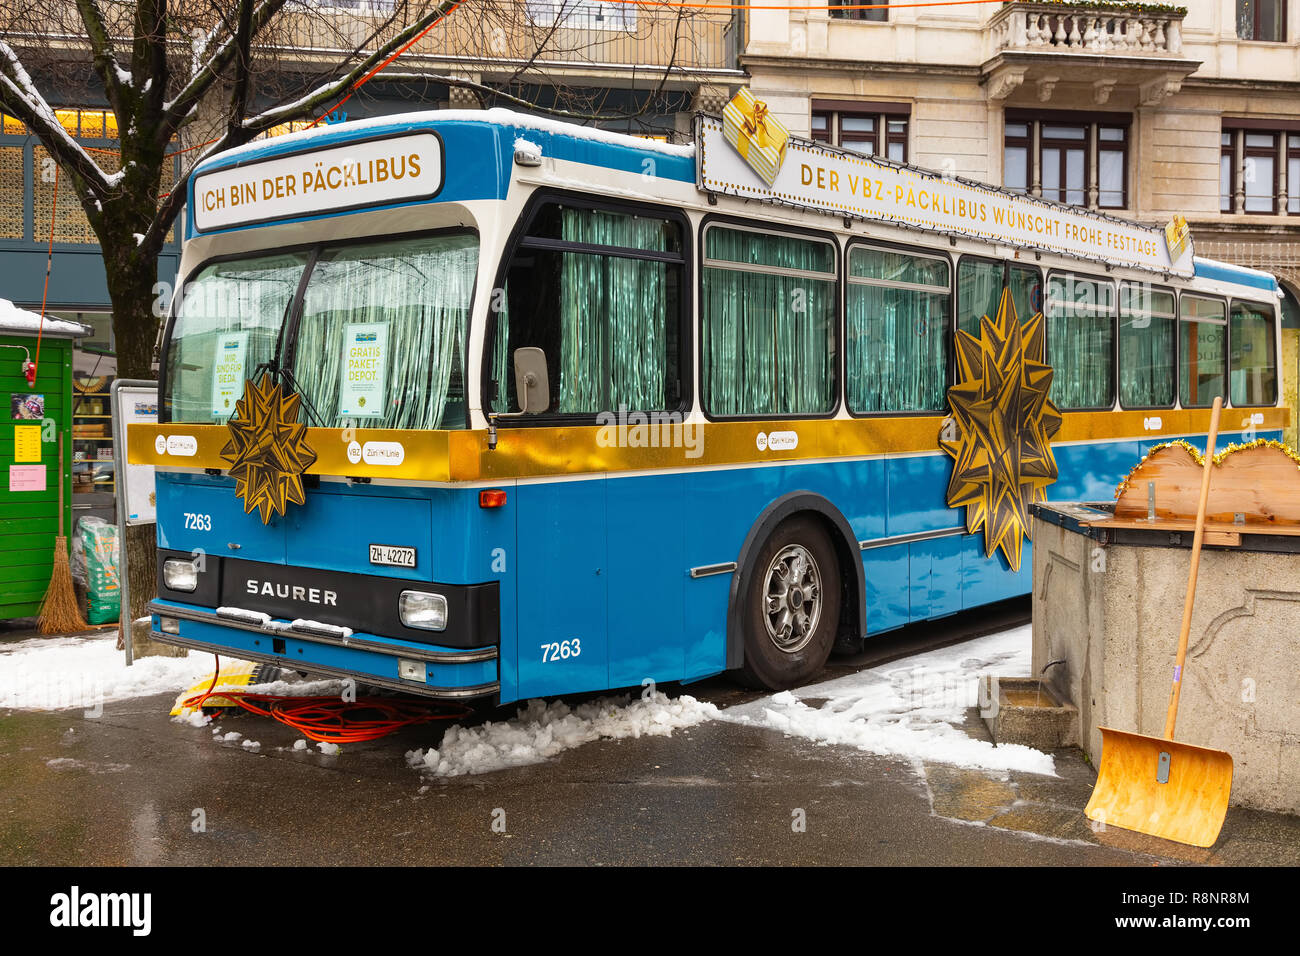 Zürich, Schweiz - 16. Dezember 2018: Die Packli-Bus in der Stadt Zürich.  Die Packli-Bus ist ein Oldtimer Bus von VBZ, die Verkehrsbetriebe  Stockfotografie - Alamy